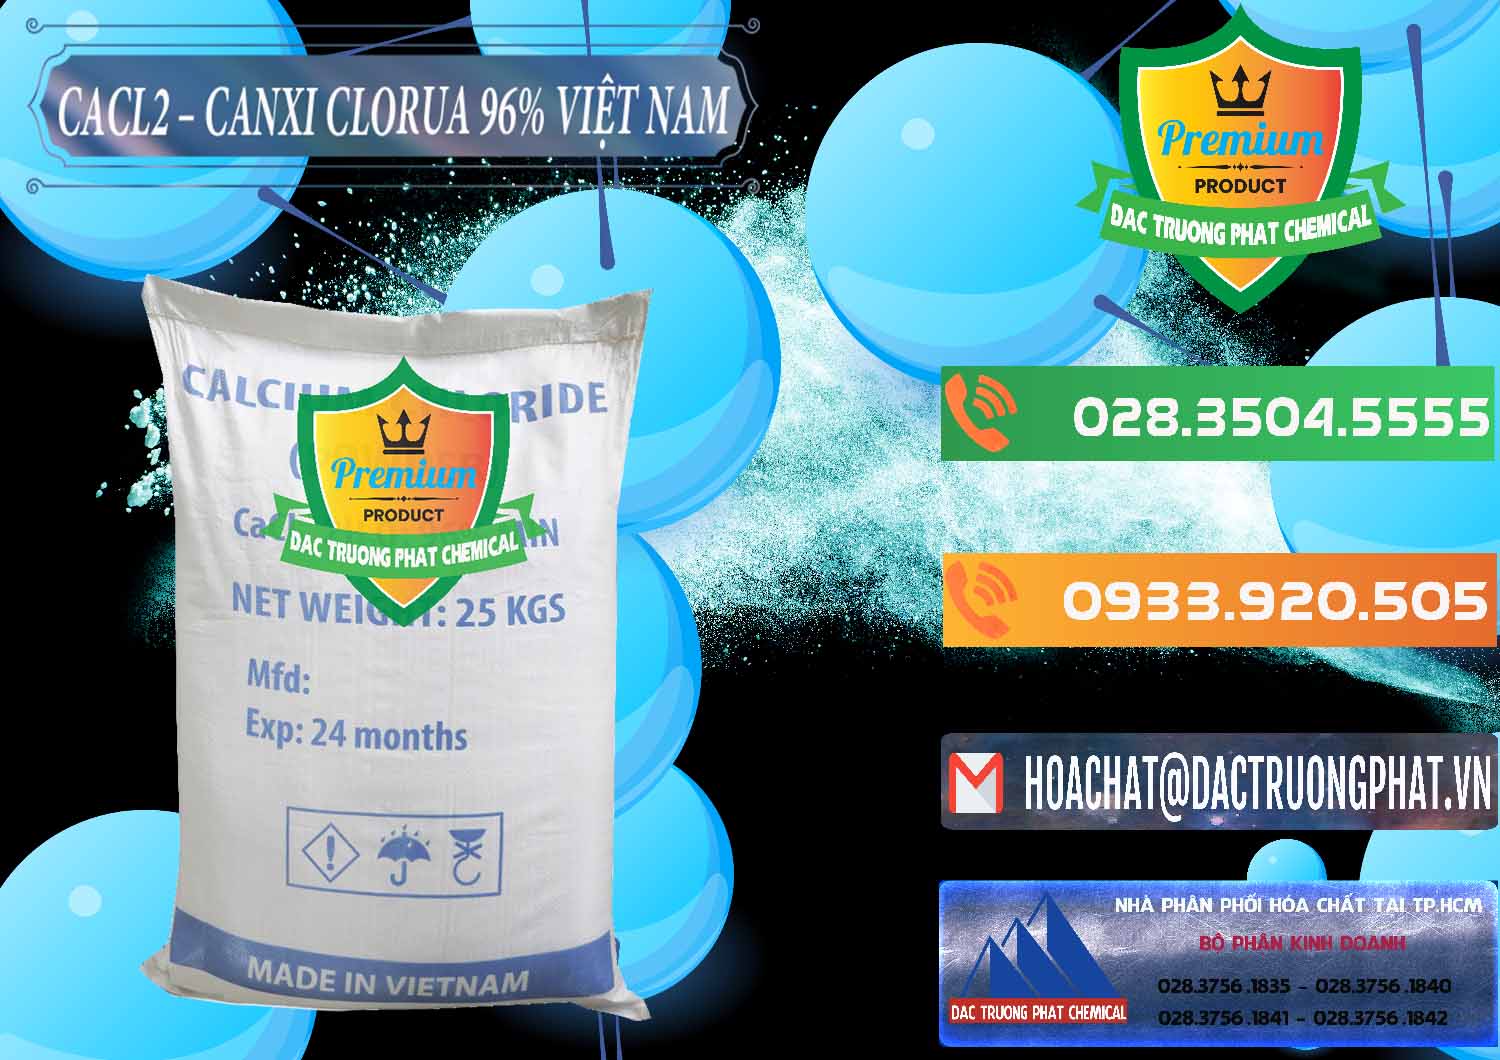 Nơi chuyên bán và cung cấp CaCl2 – Canxi Clorua 96% Việt Nam - 0236 - Đơn vị chuyên phân phối & cung ứng hóa chất tại TP.HCM - hoachatxulynuoc.com.vn